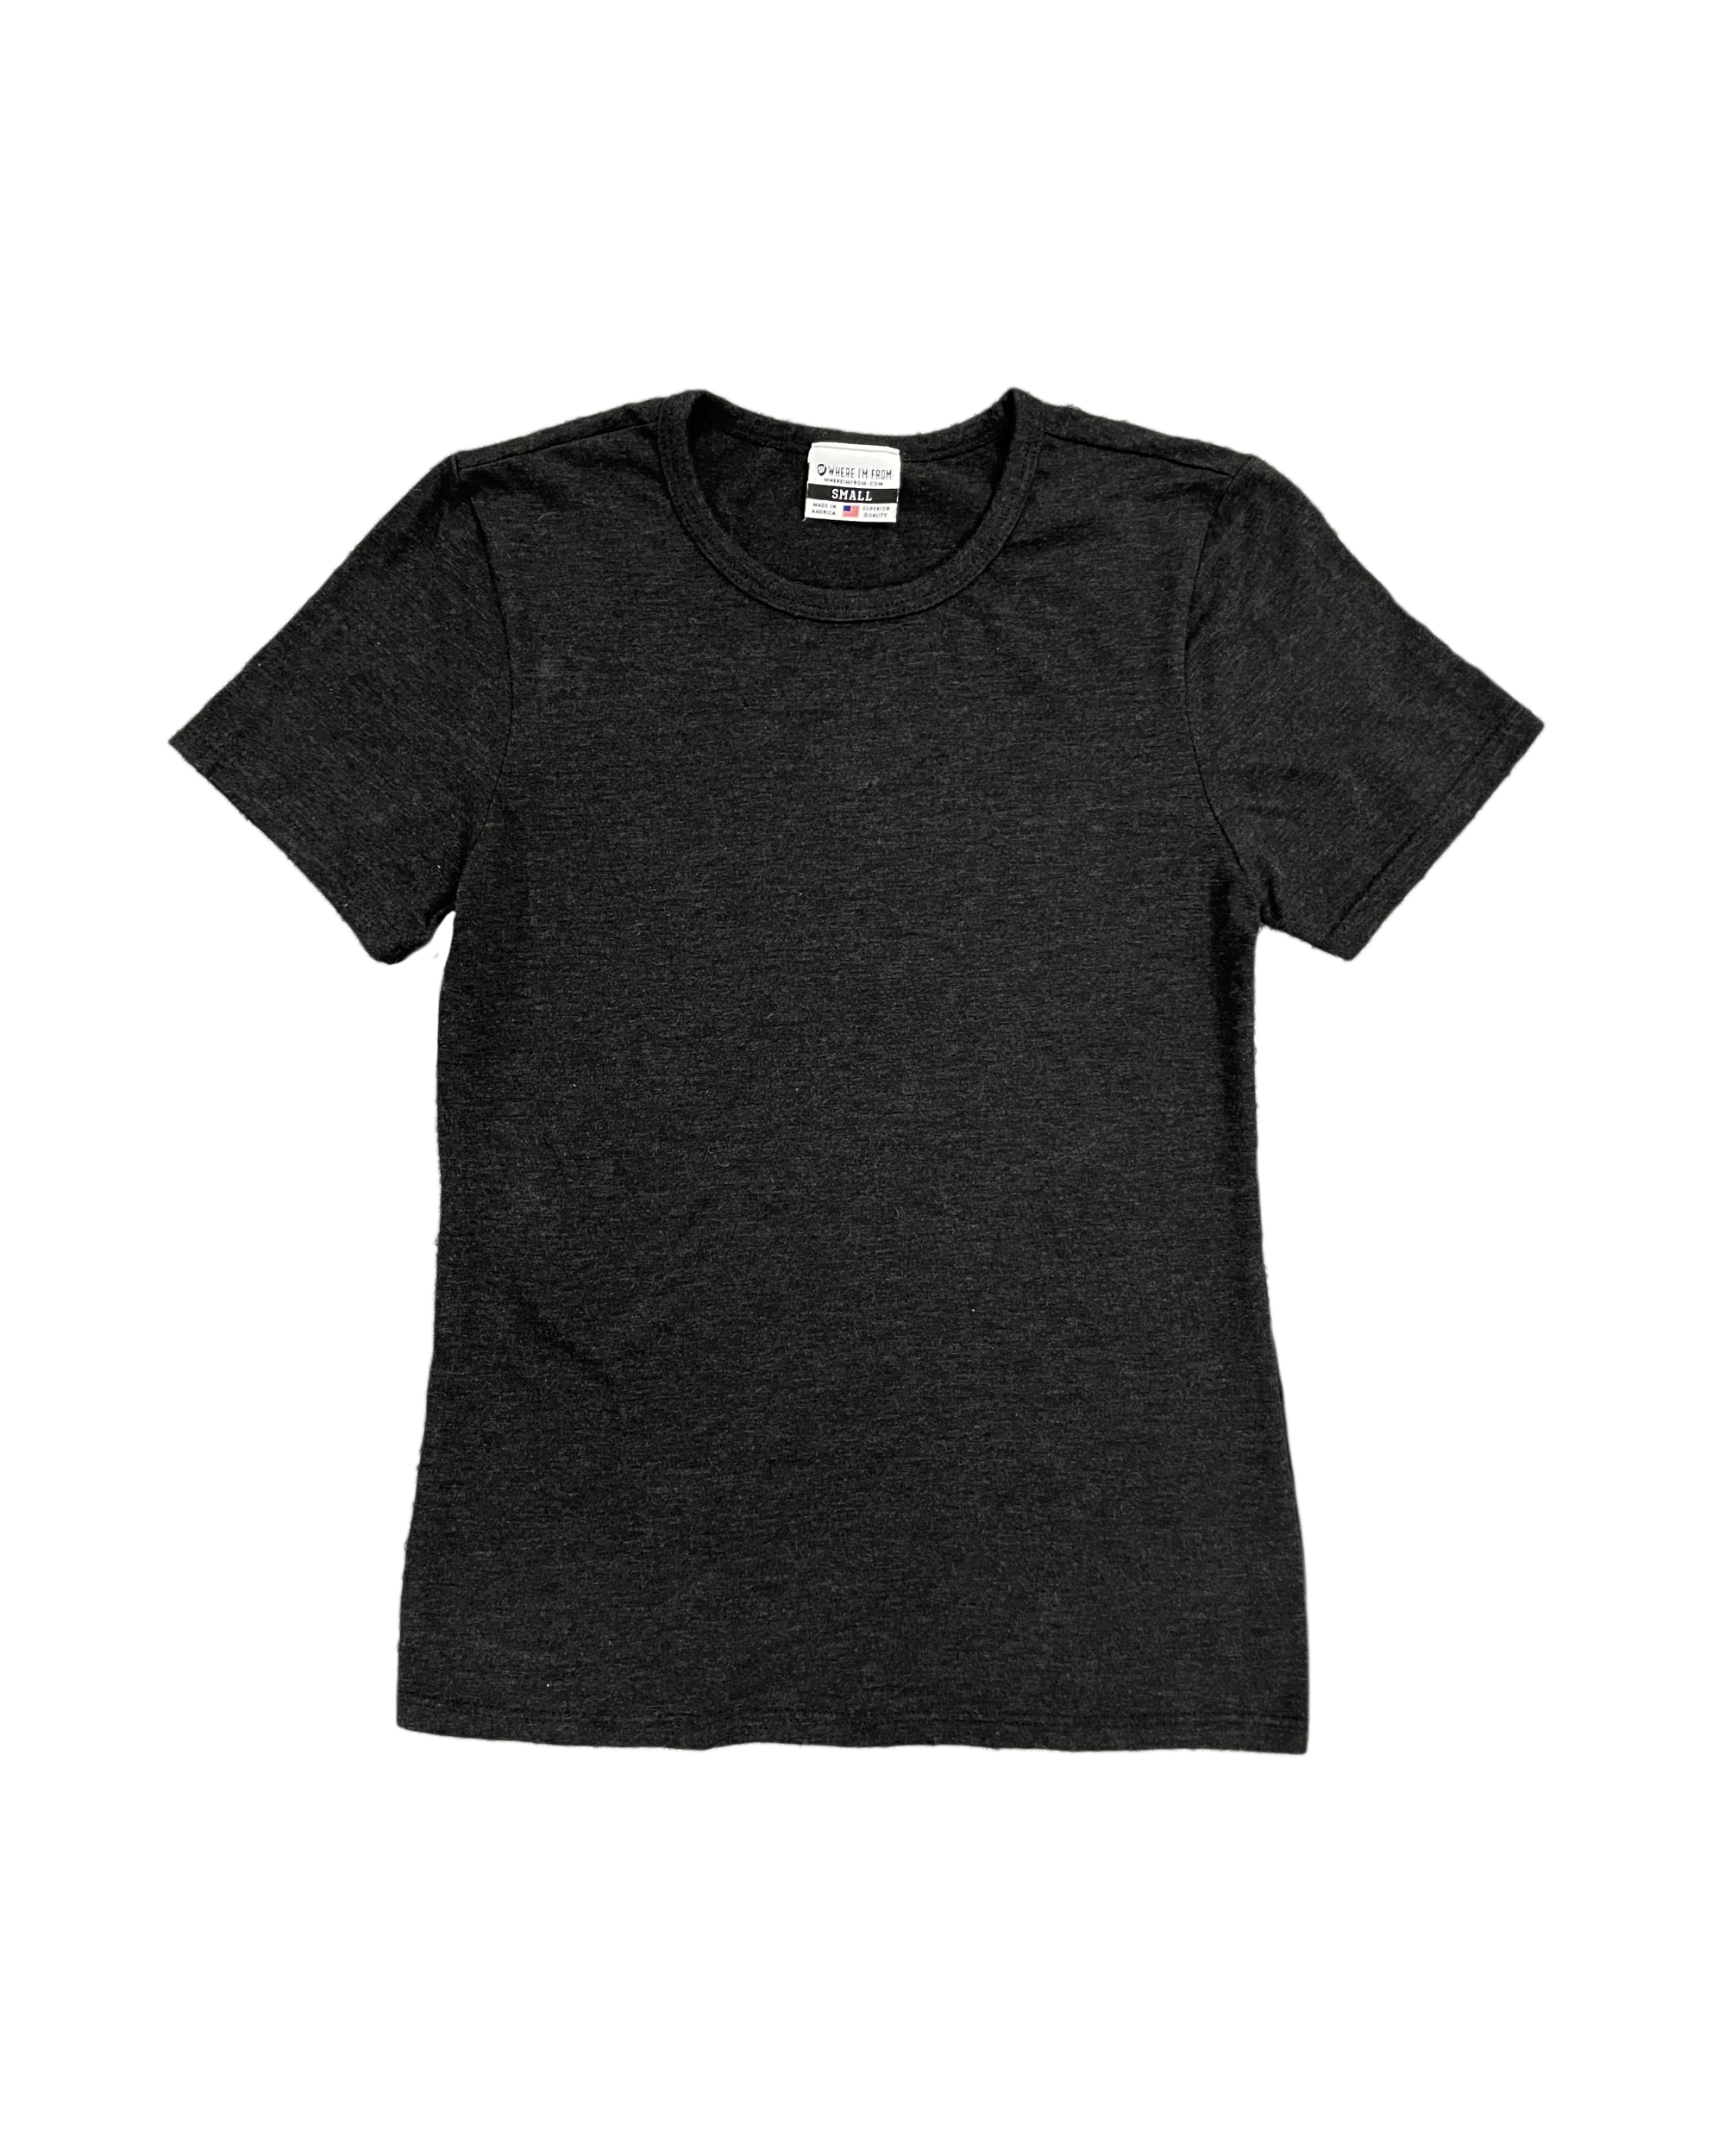 Charcoal Women’s T-shirt